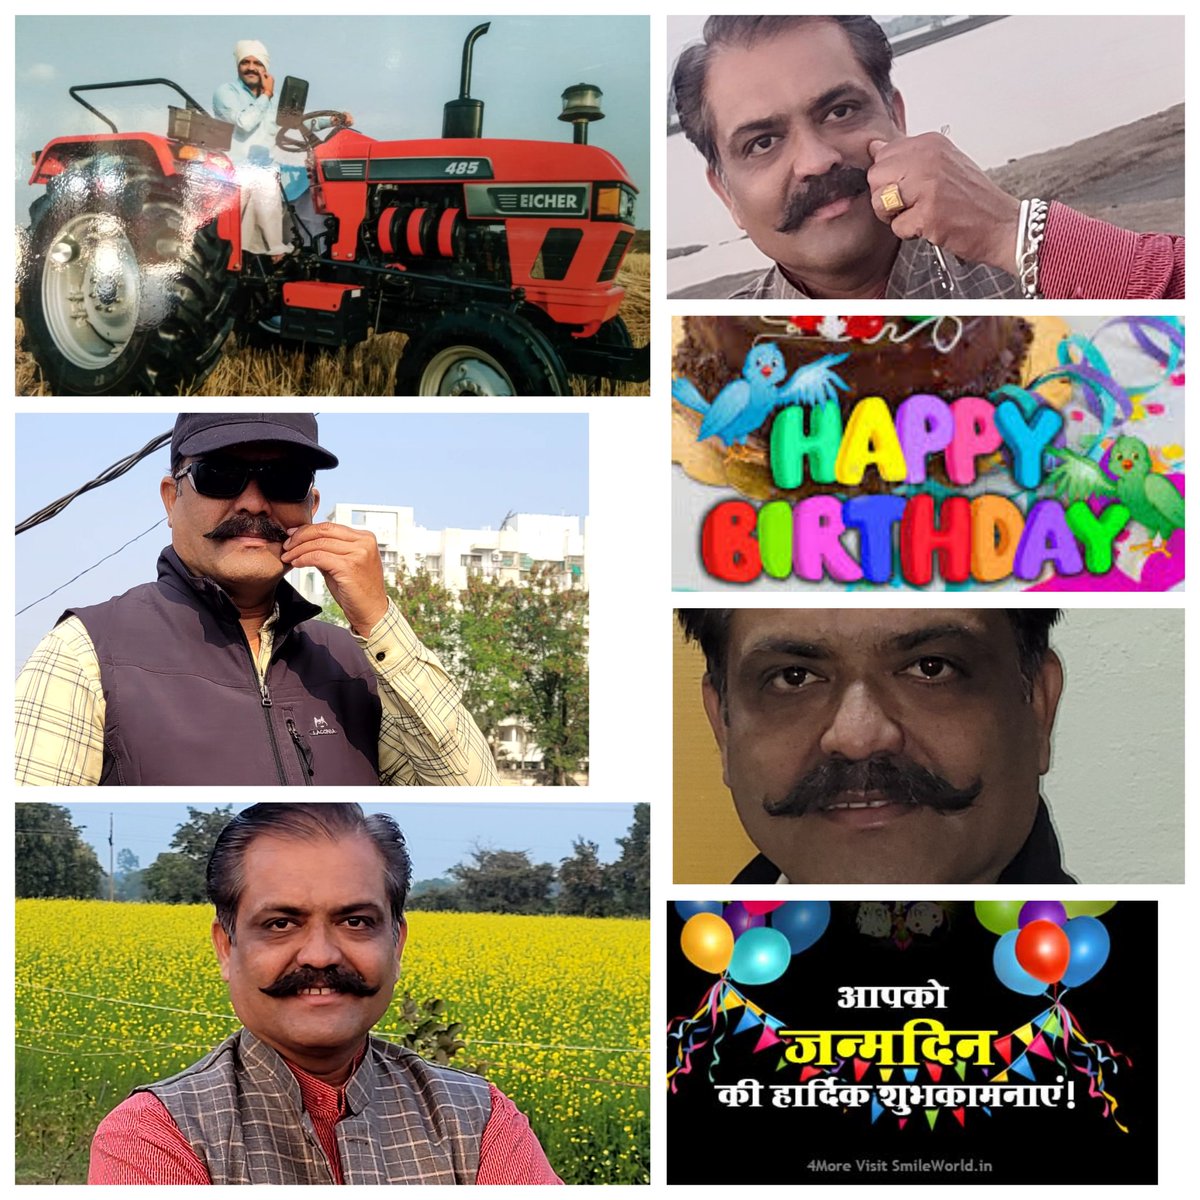 आदरणीय बड़े भाई श्री @PratapSinghBai2(गोविंदपुरा विधानसभा सह संयोजक सोशल मीडिया) एवं (वार्ड 57पूर्व संयोजक)Eicher Tractor के ब्रांड मॉडल आपको जन्मदिन की  बहुत बहुत बधाई एवं शुभकामनाएं🥳🎂🎂🎂👏👏👏
@sumitpachauri09 
@ashwinirai_ 
@dhirajsoni82 
@jagdishv_BJP 
@LalitKumarRaic4